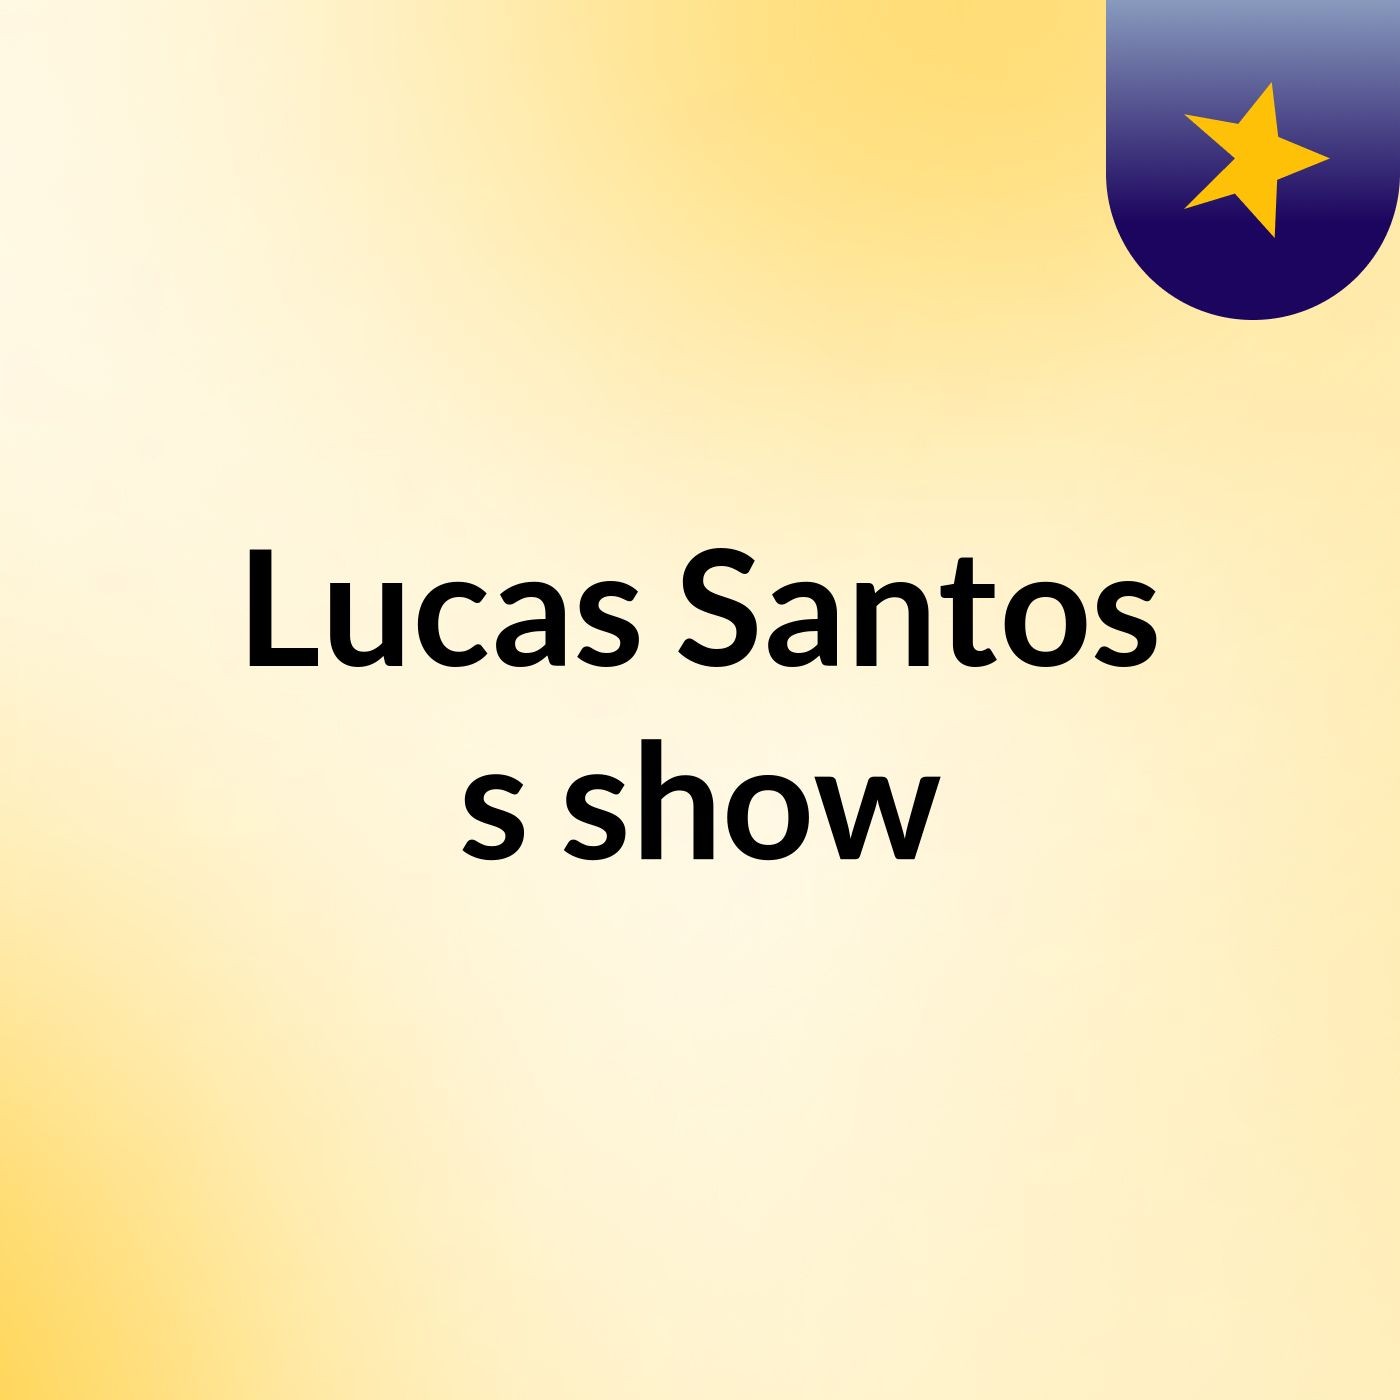 Lucas Santos's show